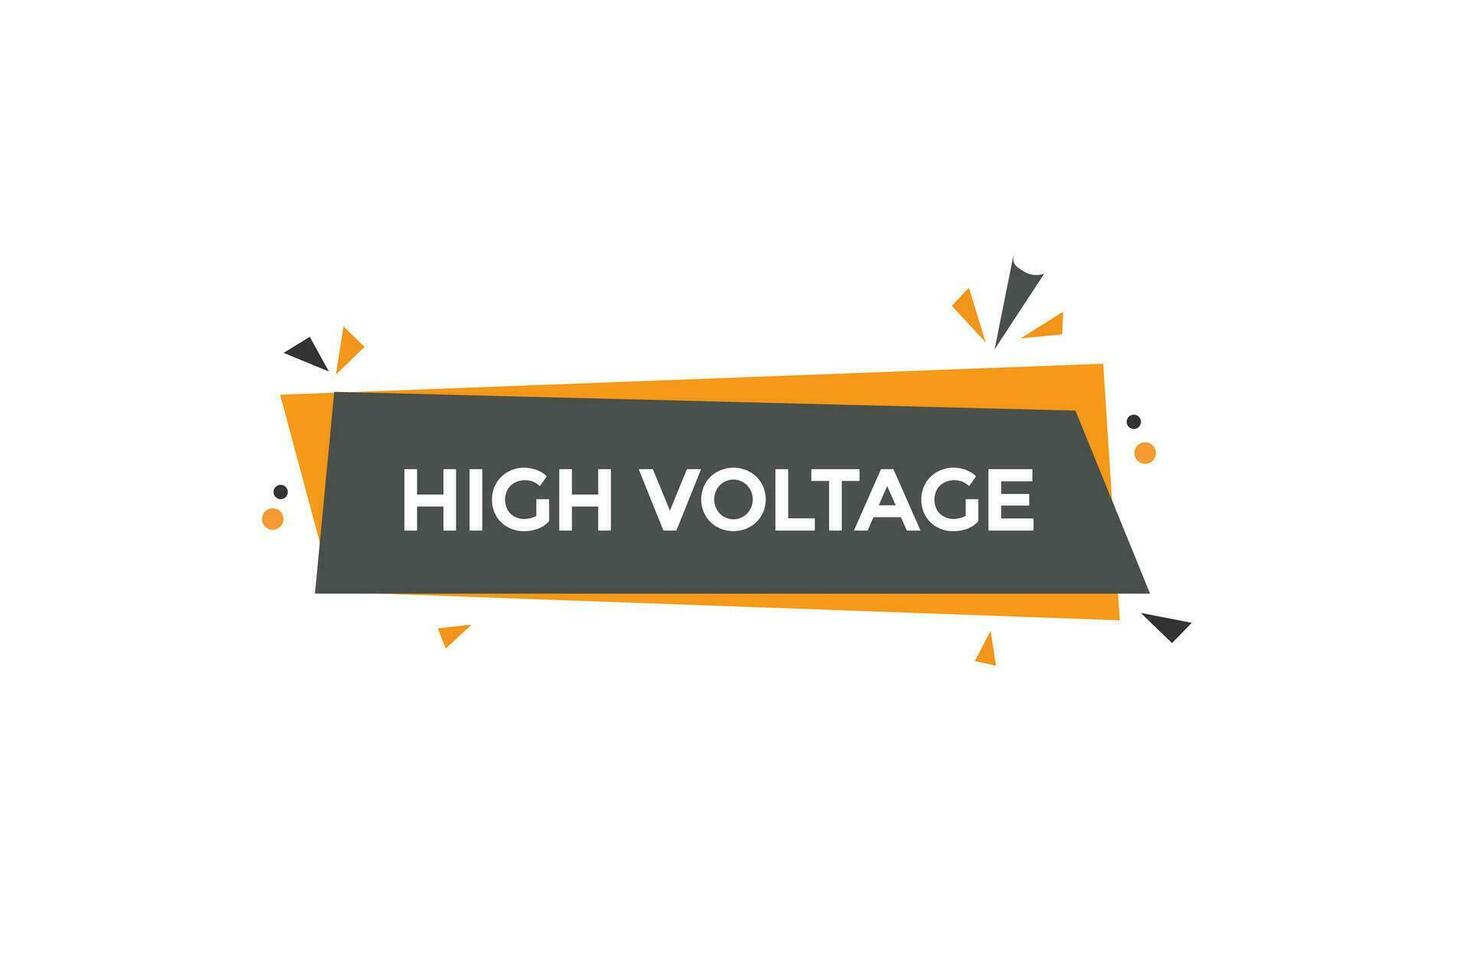 nuovo alto voltaggio moderno, sito web, clic pulsante, livello, cartello, discorso, bolla striscione, vettore